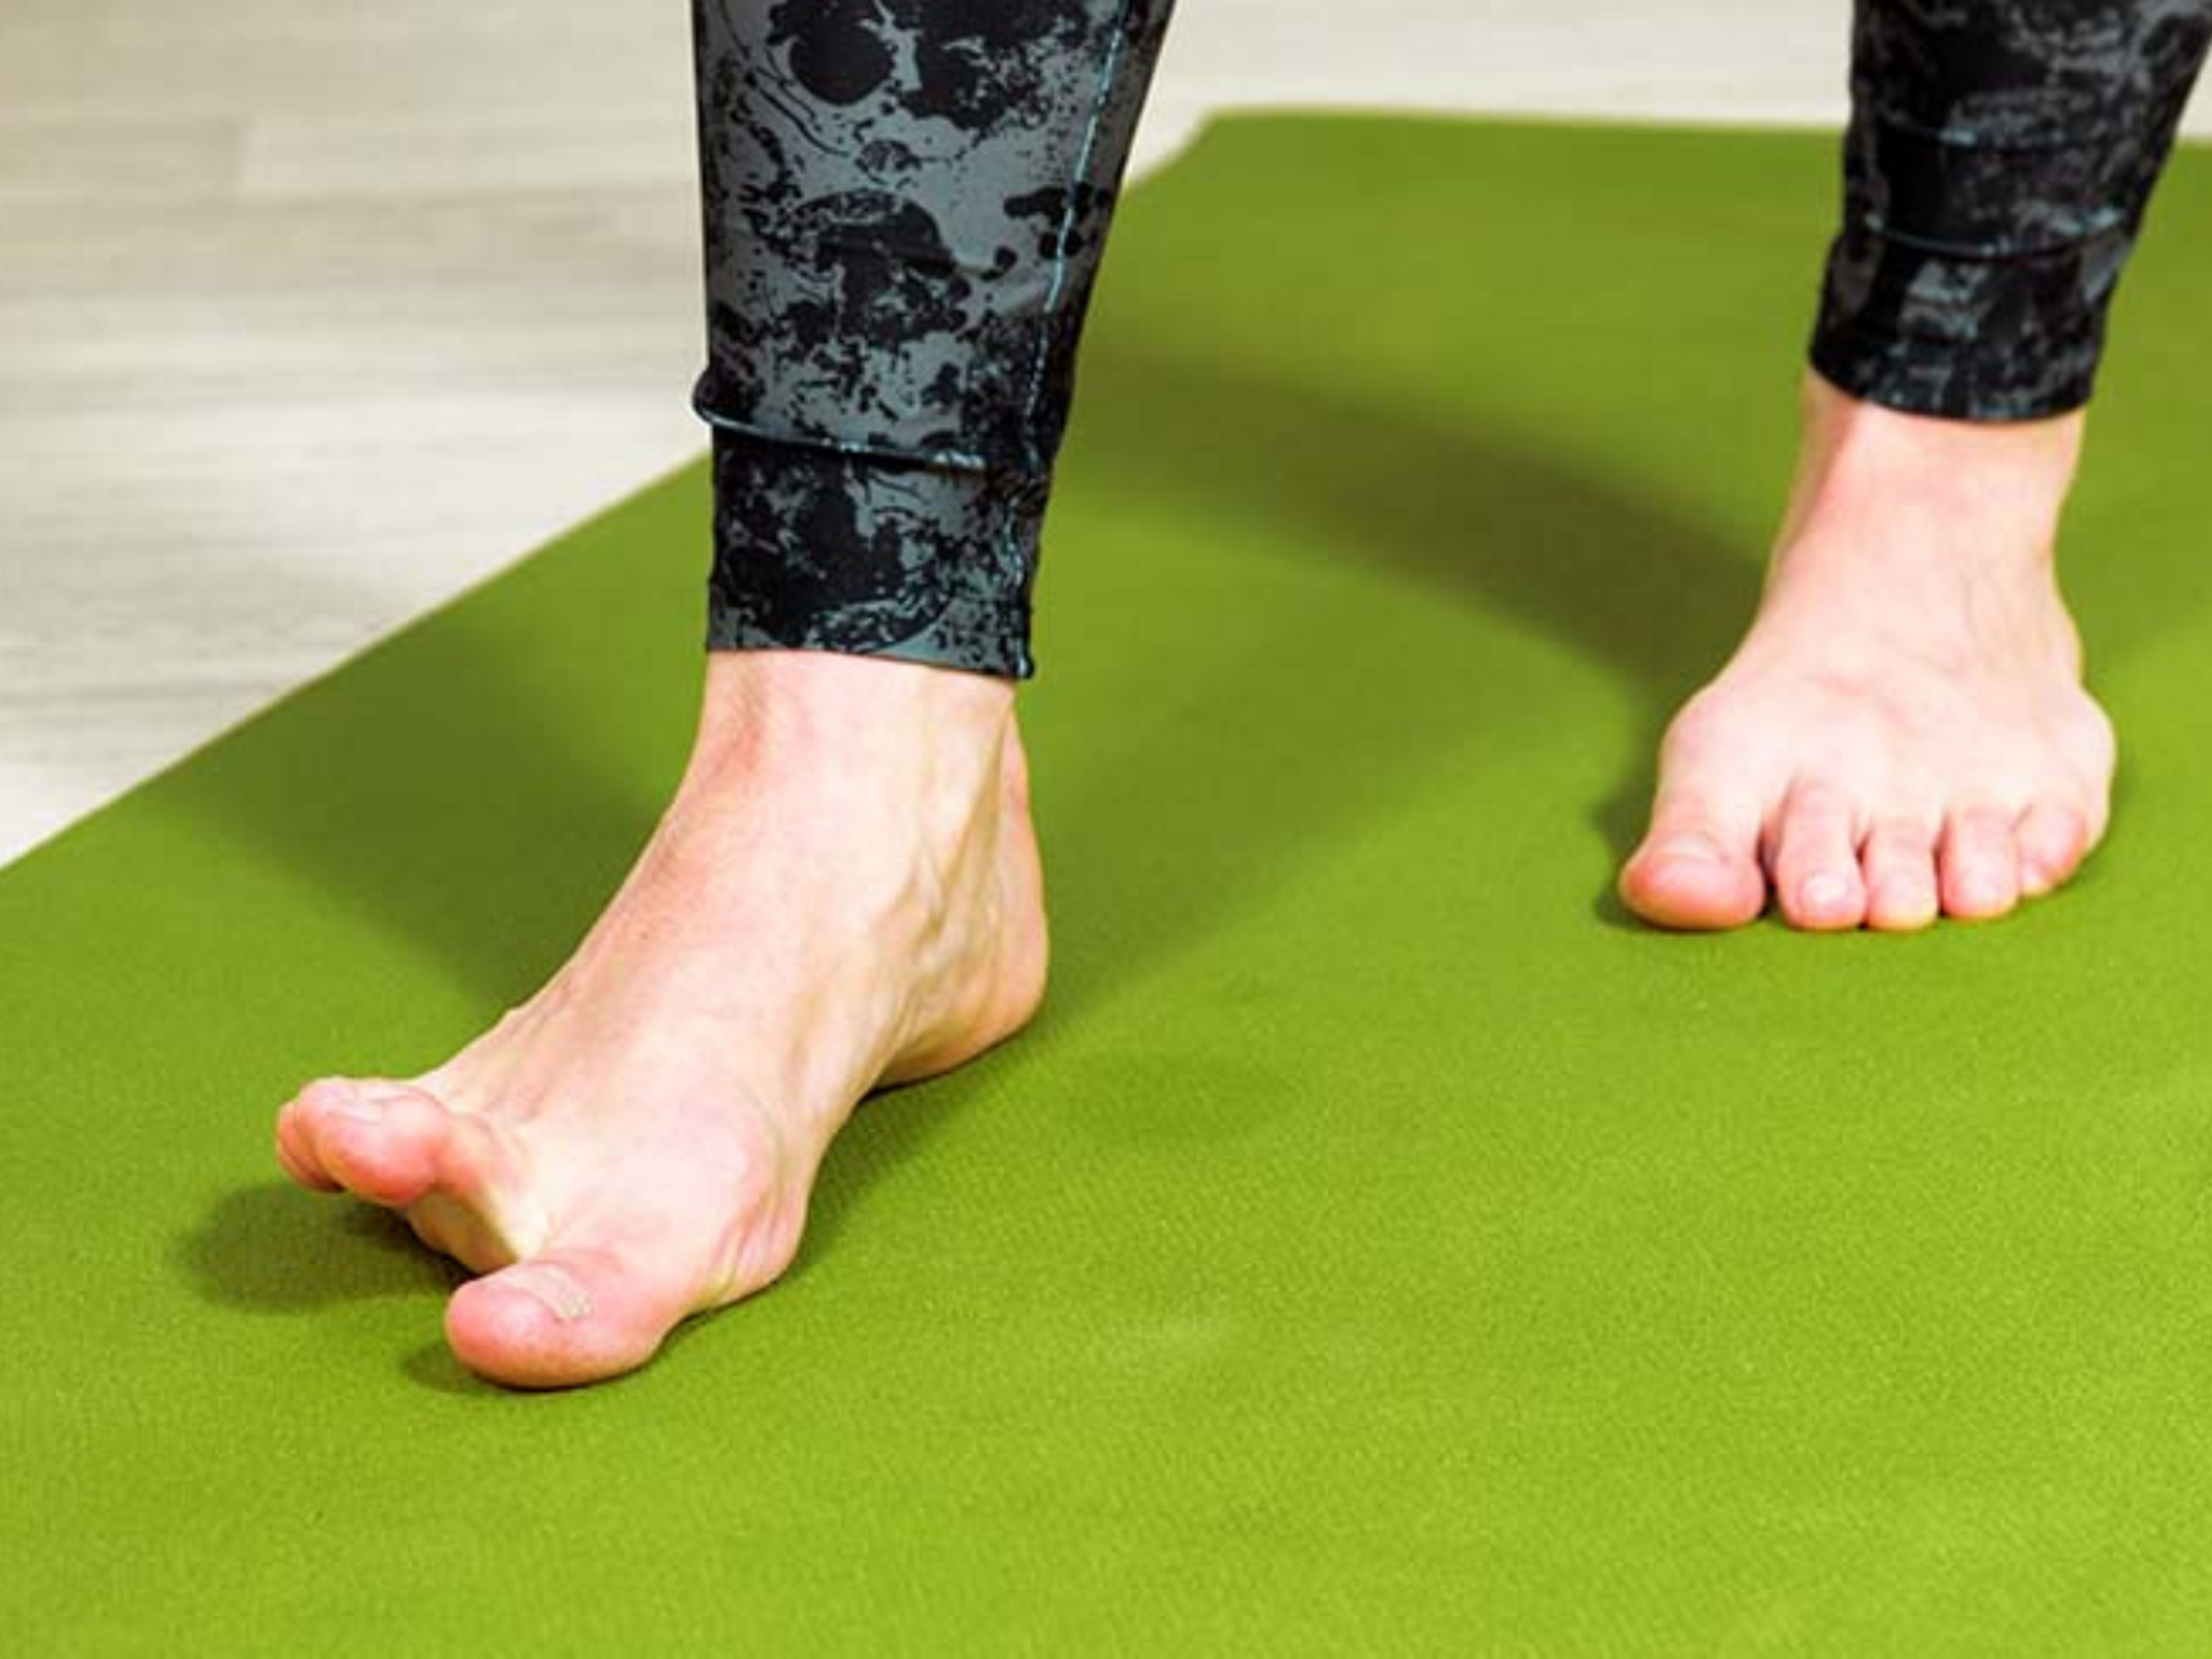 Foot strengthening exercise for plantar fasciitis